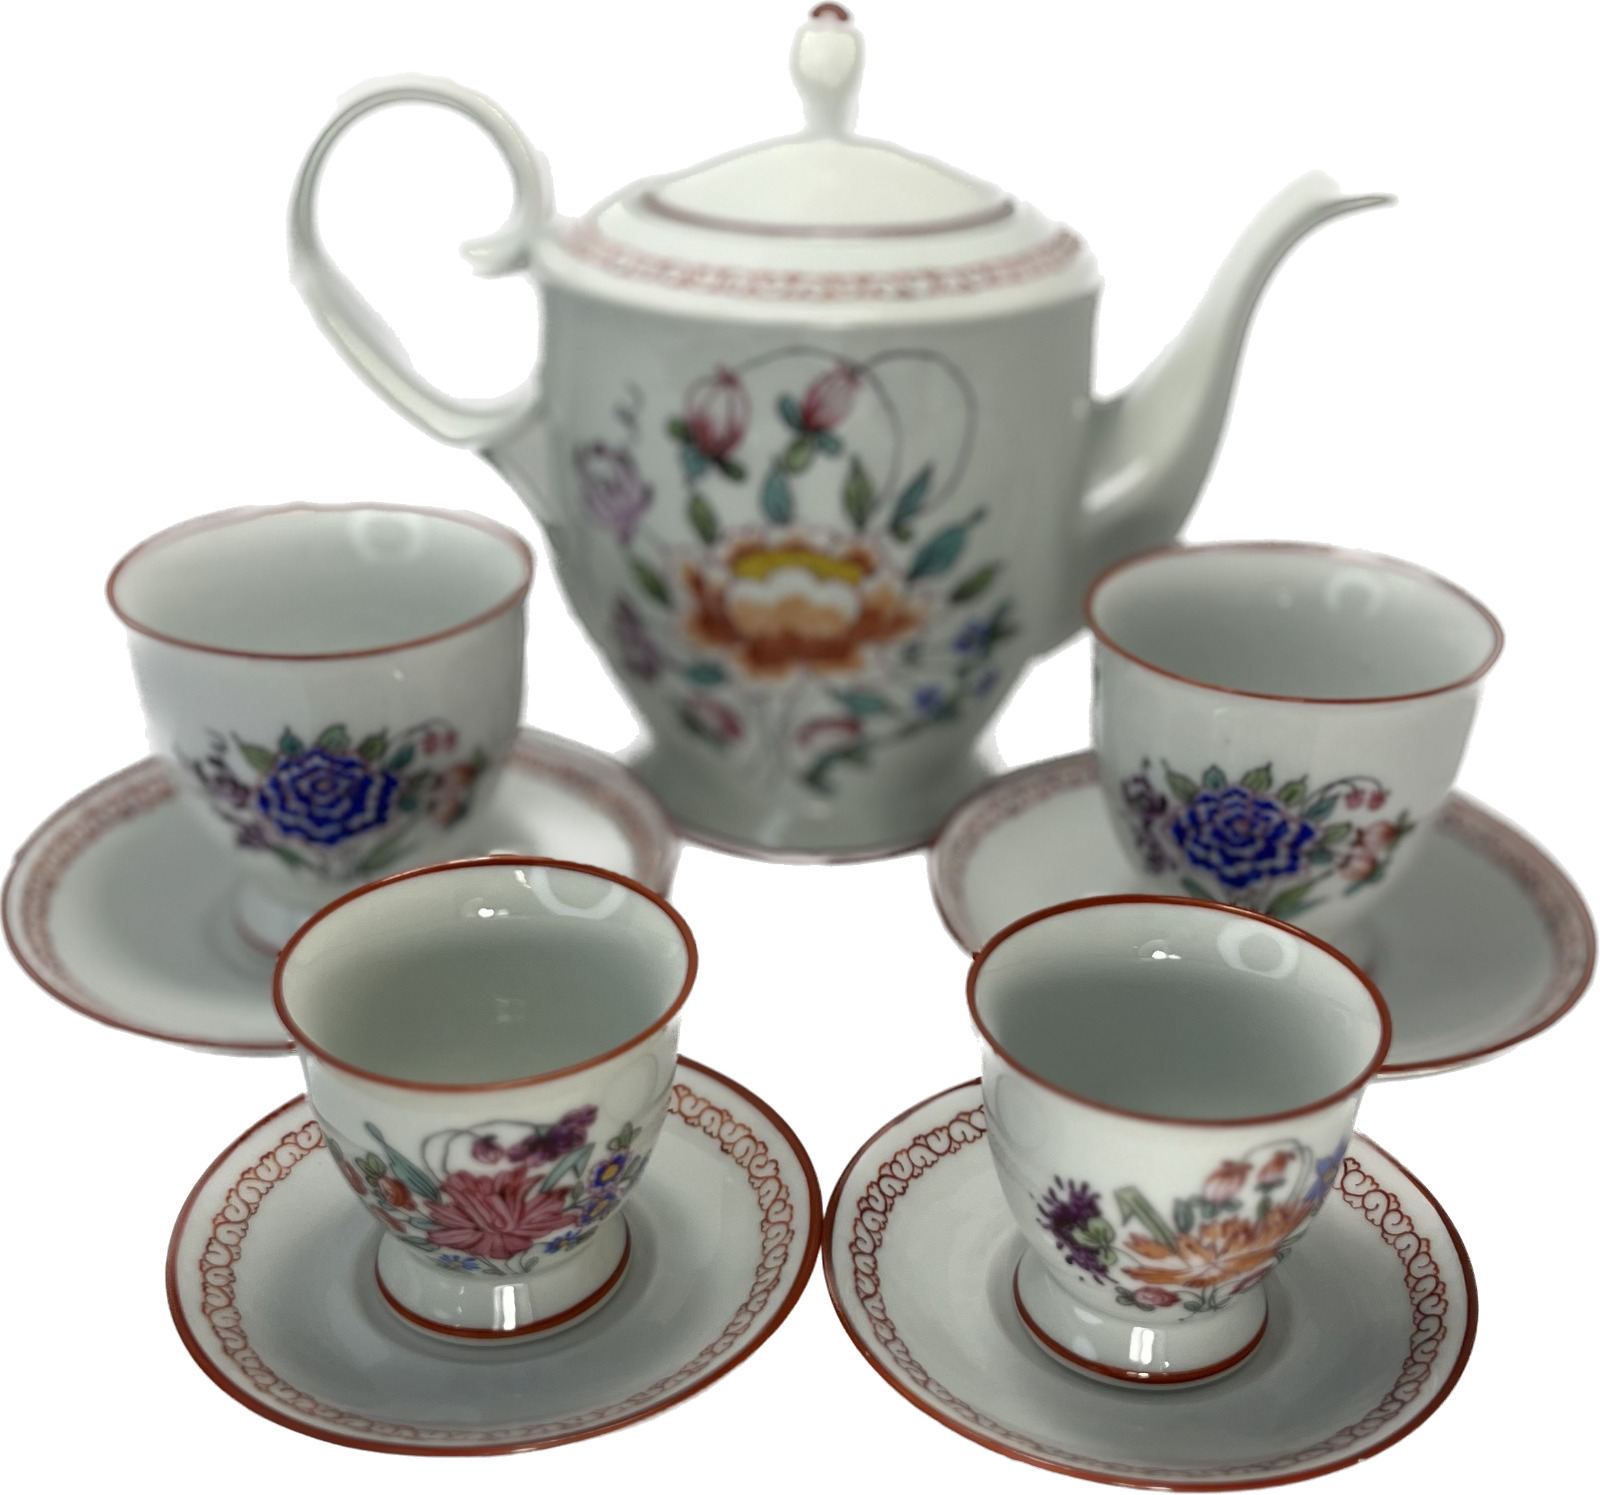 Exquisite Vintage Hand Painted Floral Tea Set 9 Piece Set